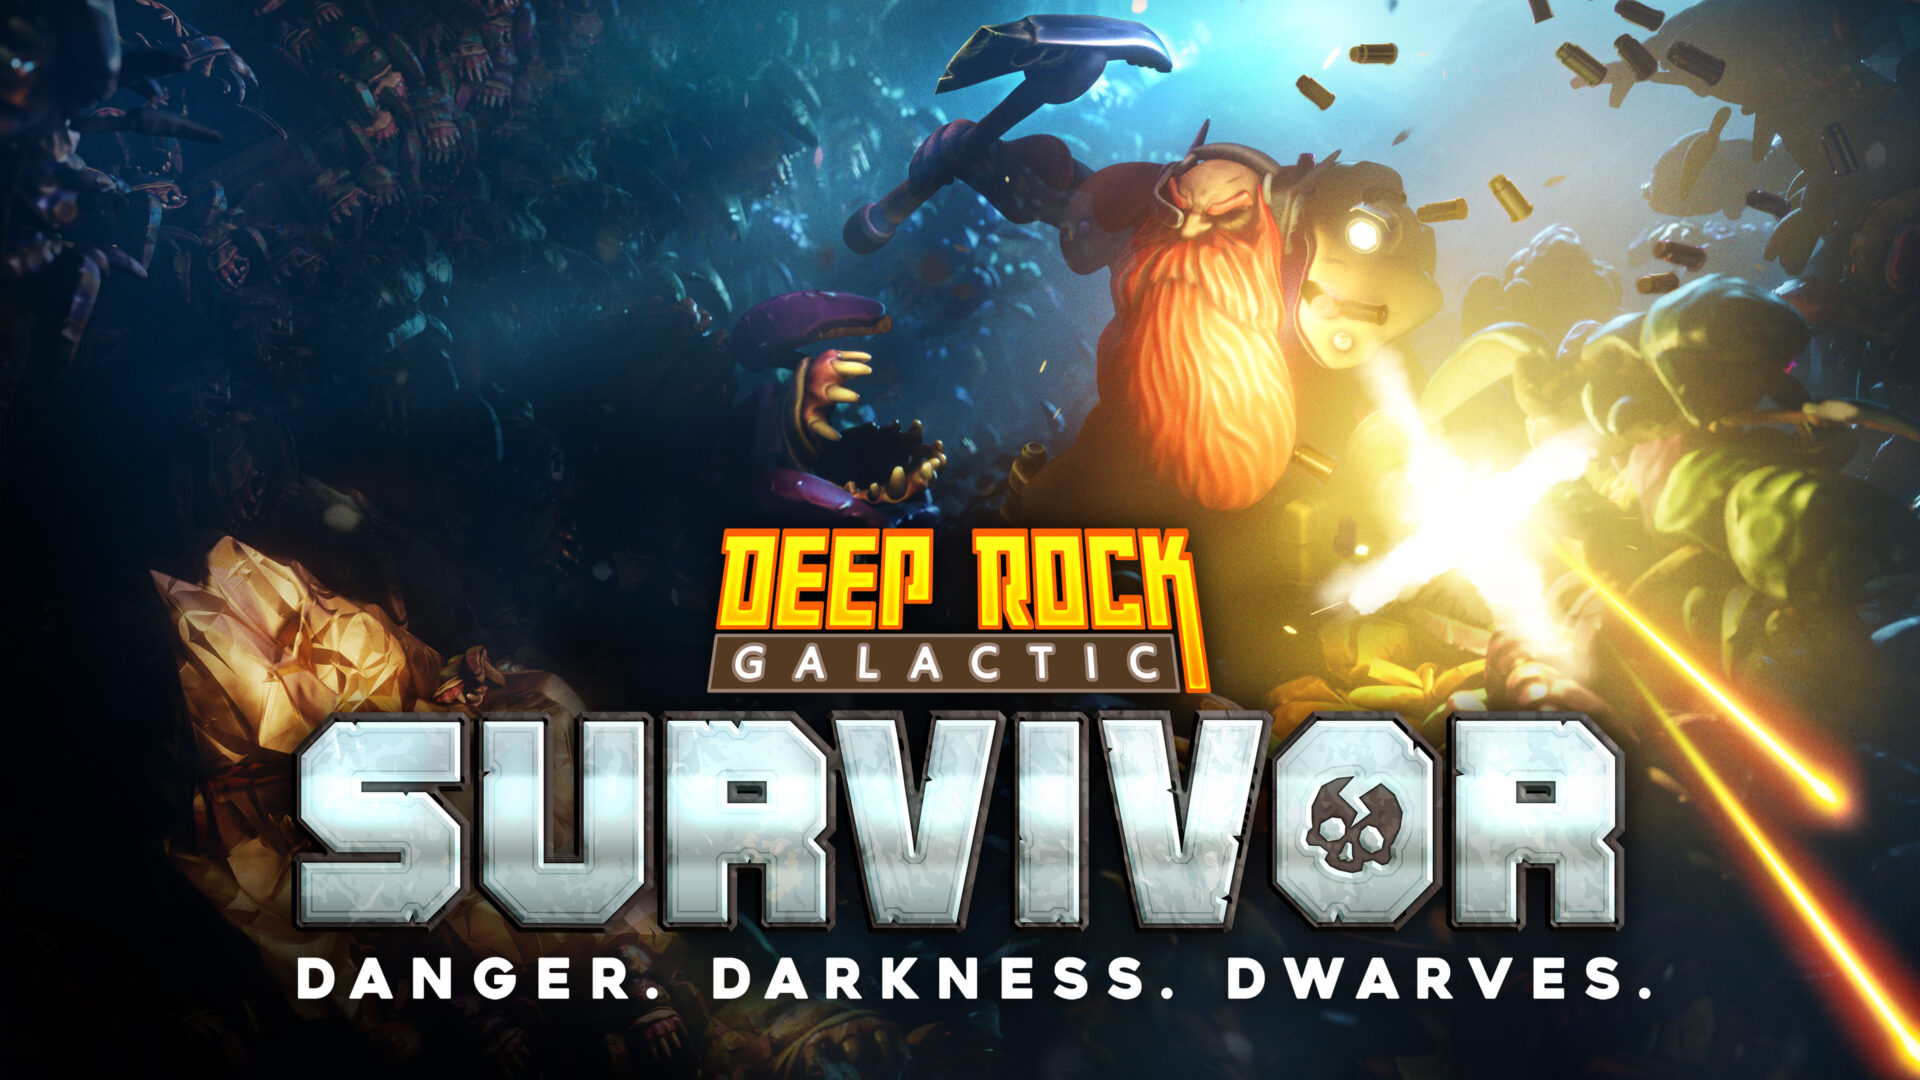 Deep Rock Galactic: Survivor for PC has been announced